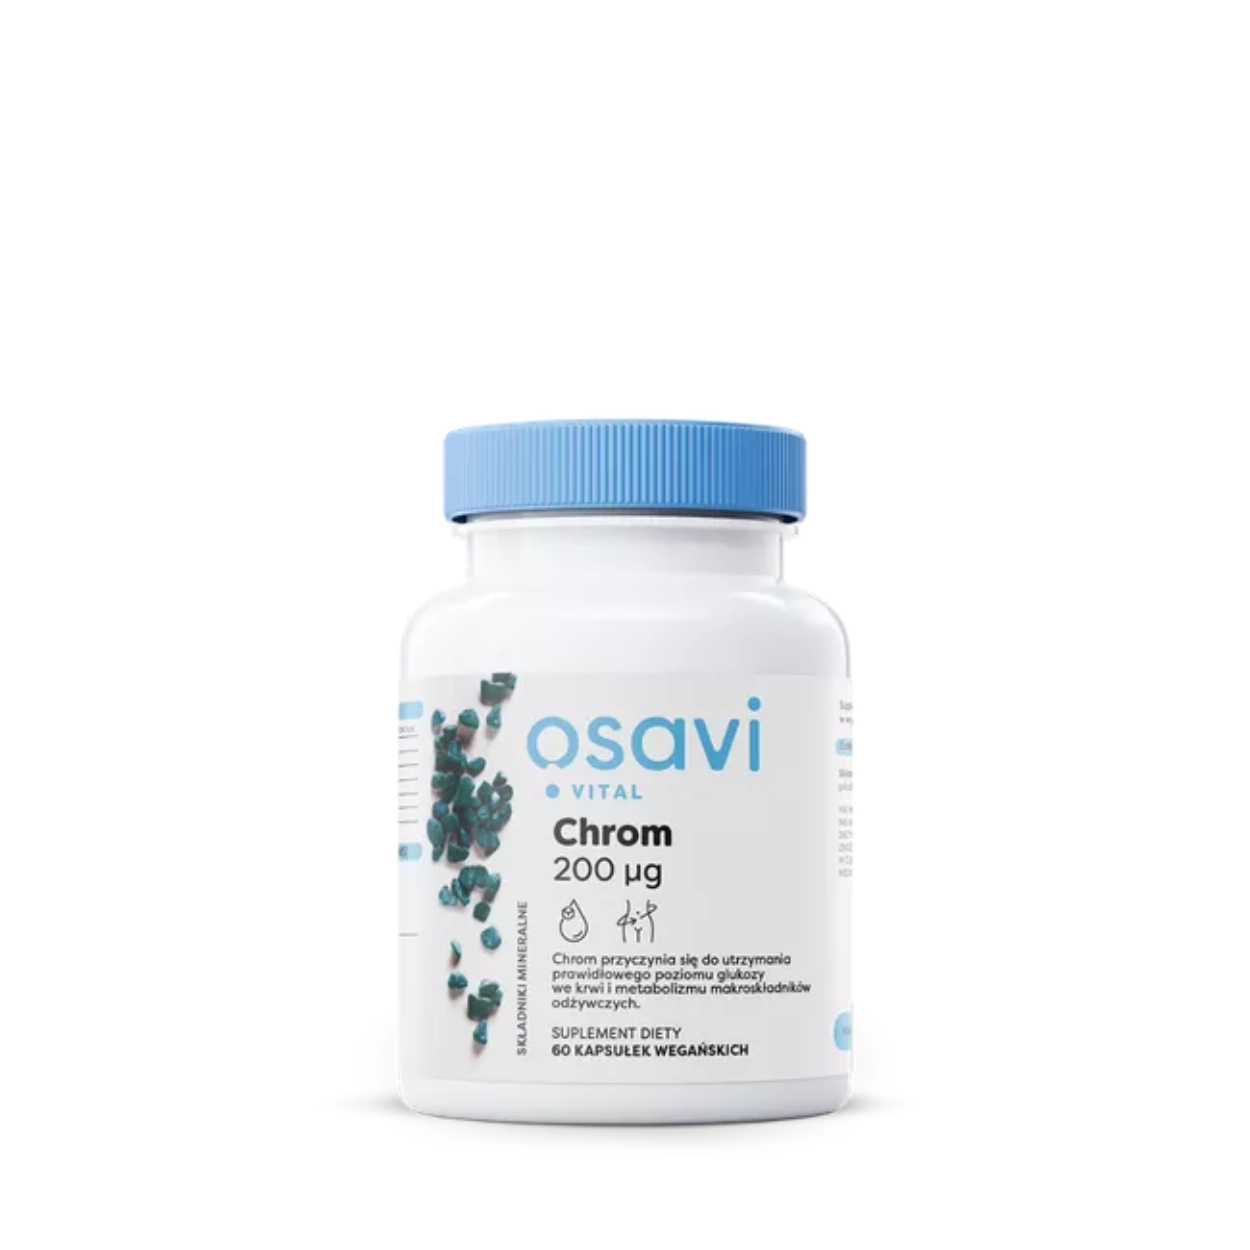 Biały pojemnik z suplementem diety Qsavi Vital Chrom 200 µg z niebieską nakrętką, 60 kapsułek wegańskich, wspierających metabolizm makroskładników odżywczych i utrzymanie prawidłowego poziomu glukozy we krwi.